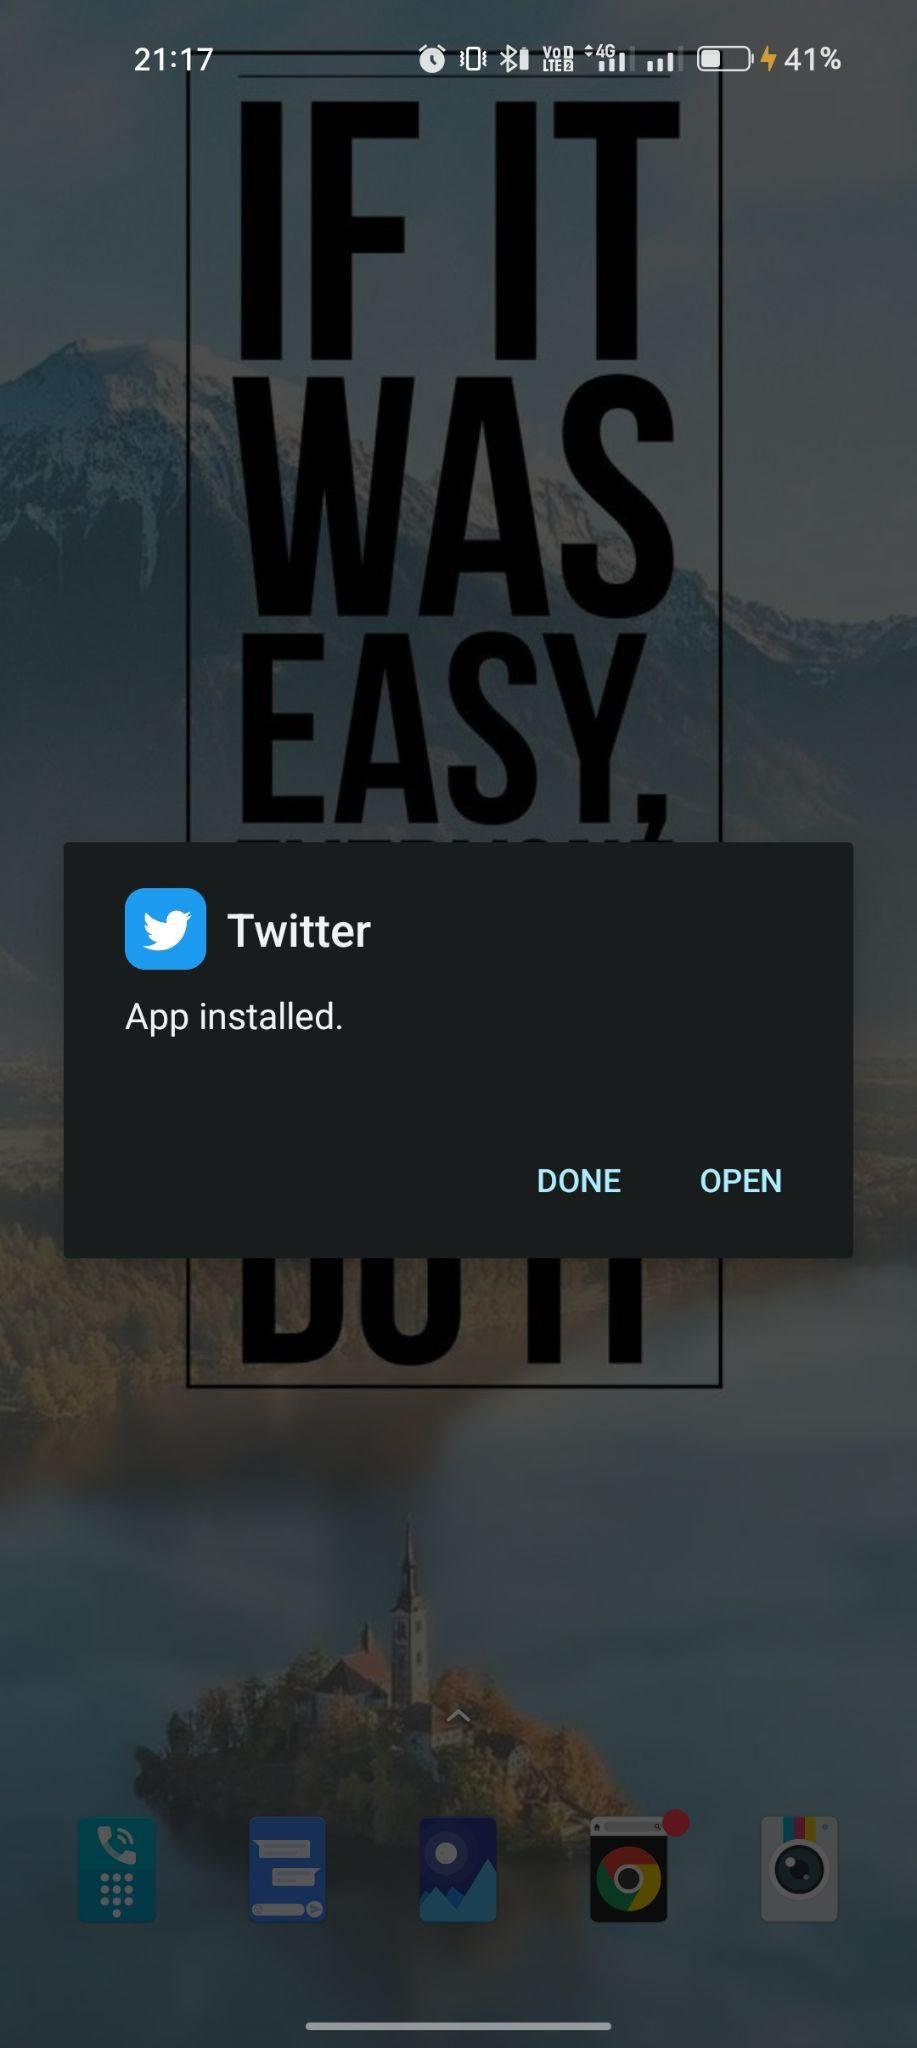 Twitter apk installed